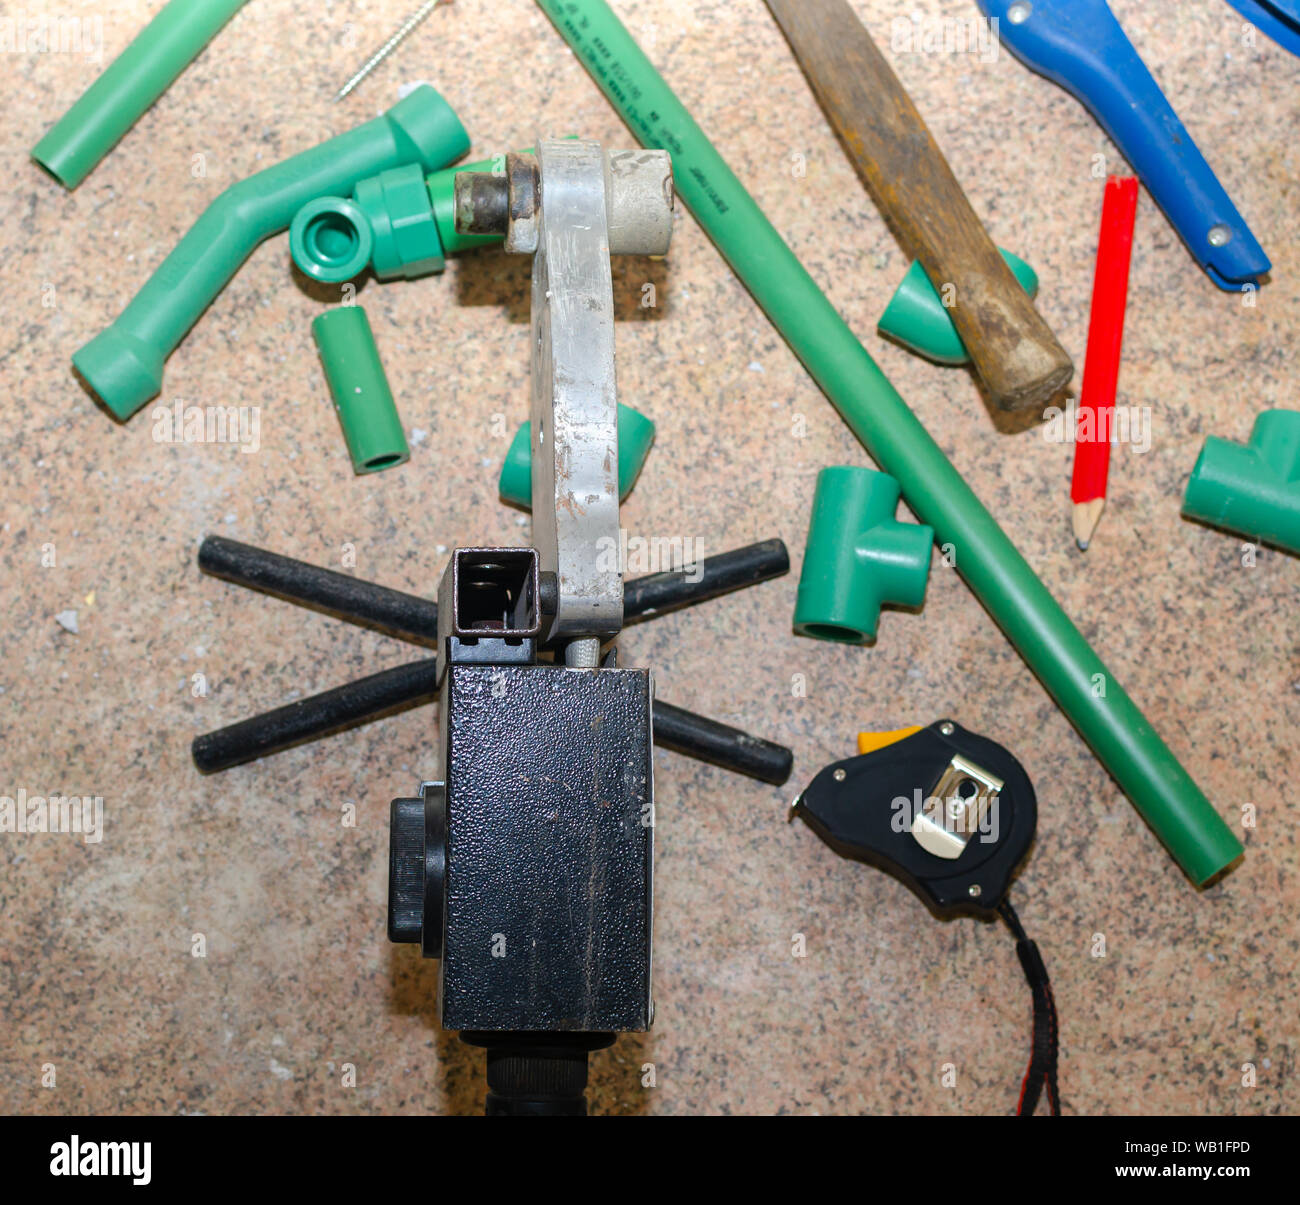 Werkzeuge zum Schneiden und Wasserleitungen aus Kunststoff Stockfotografie  - Alamy